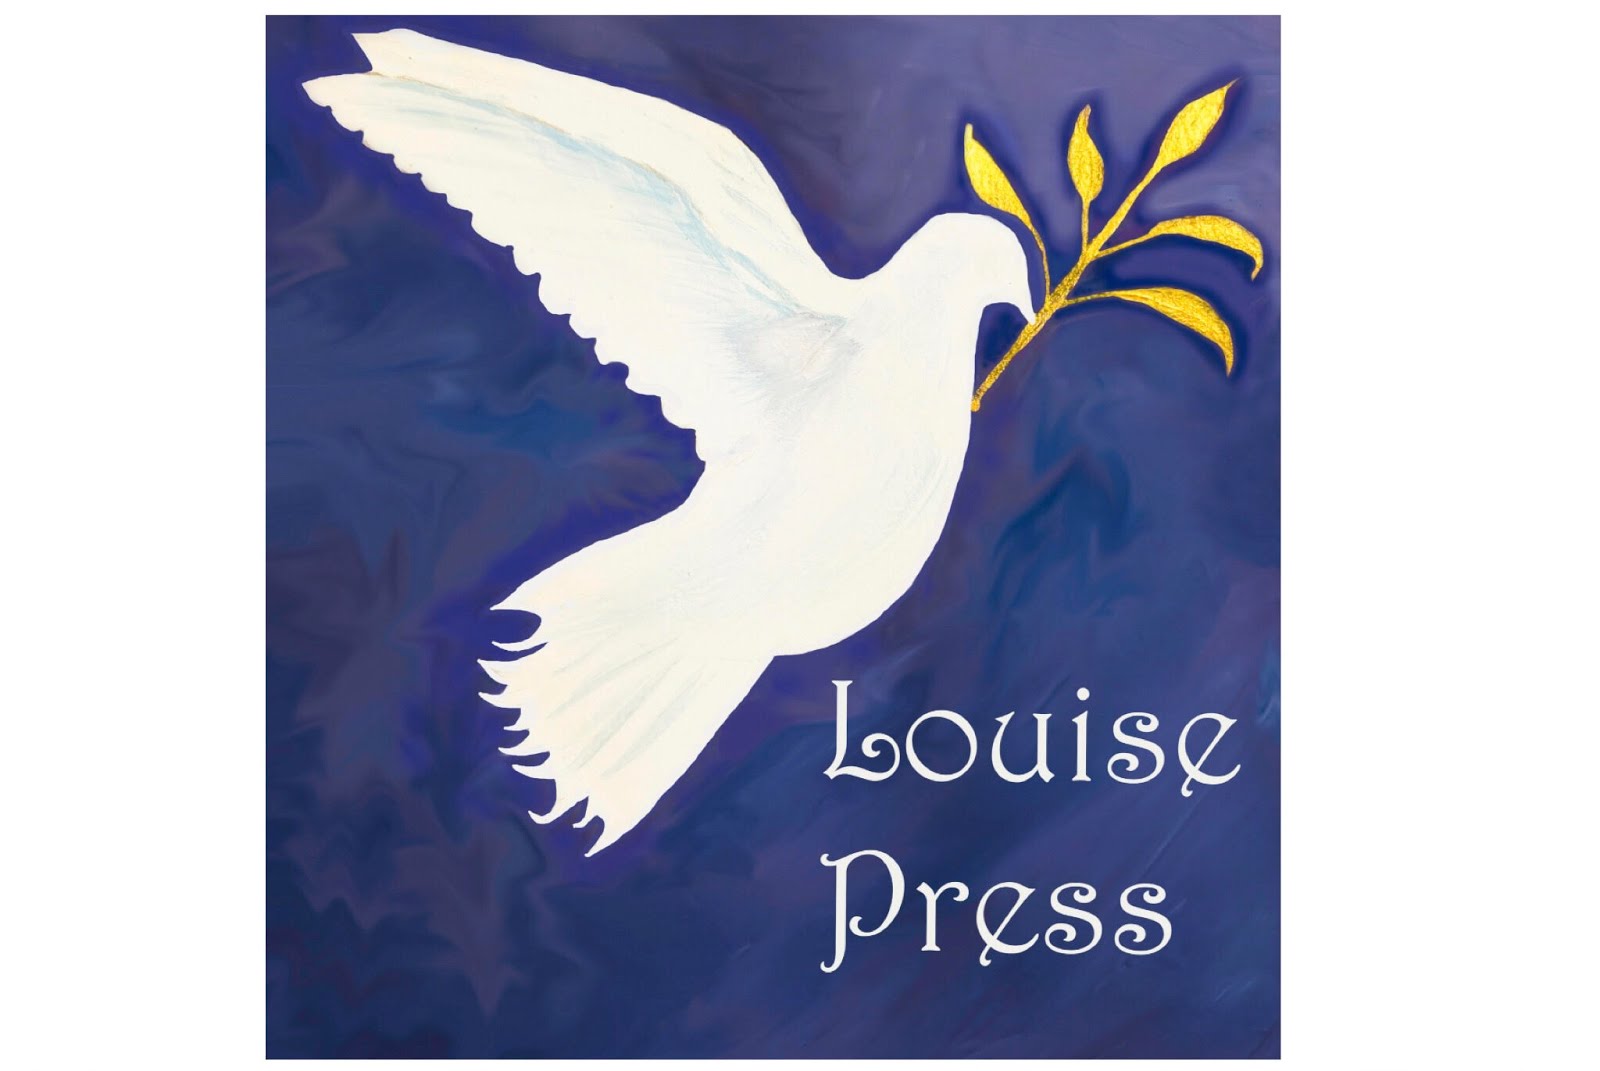 Louise Press